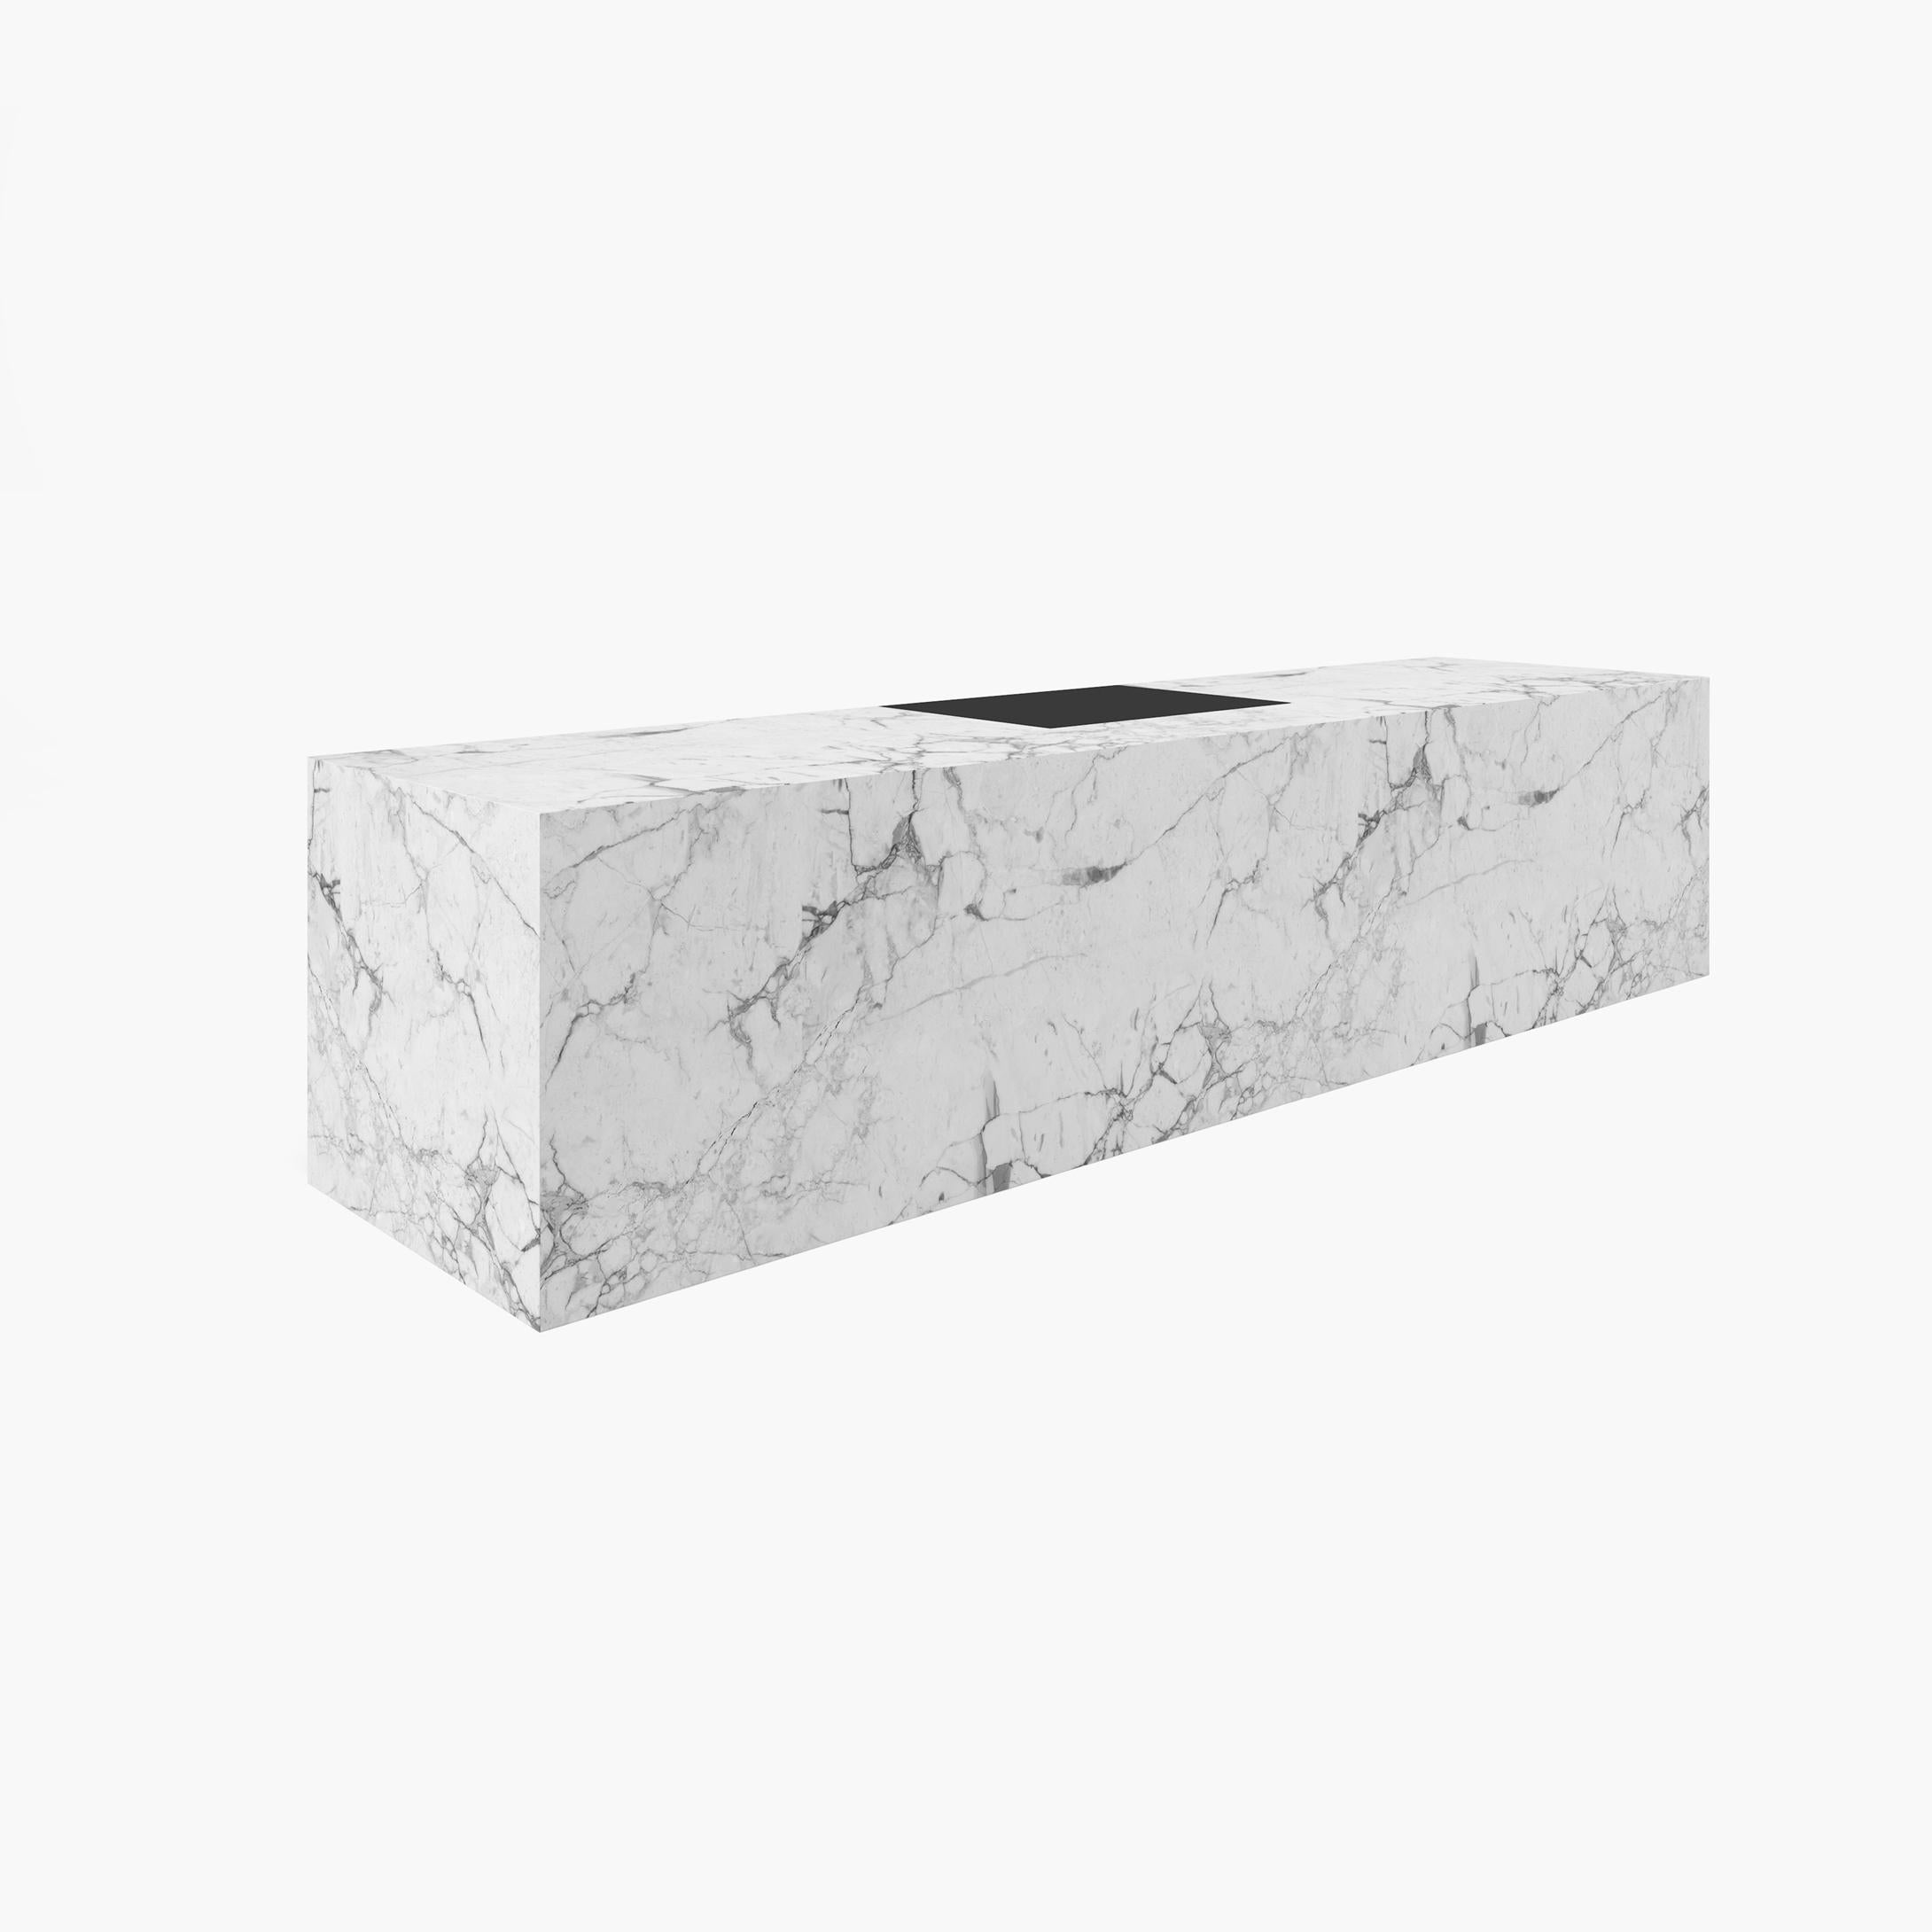 Bureau cubique, marbre blanc, tiroir en cuir 400x75x75cm, Allemagne, fabrication artisanale pc1/1 en vente 1